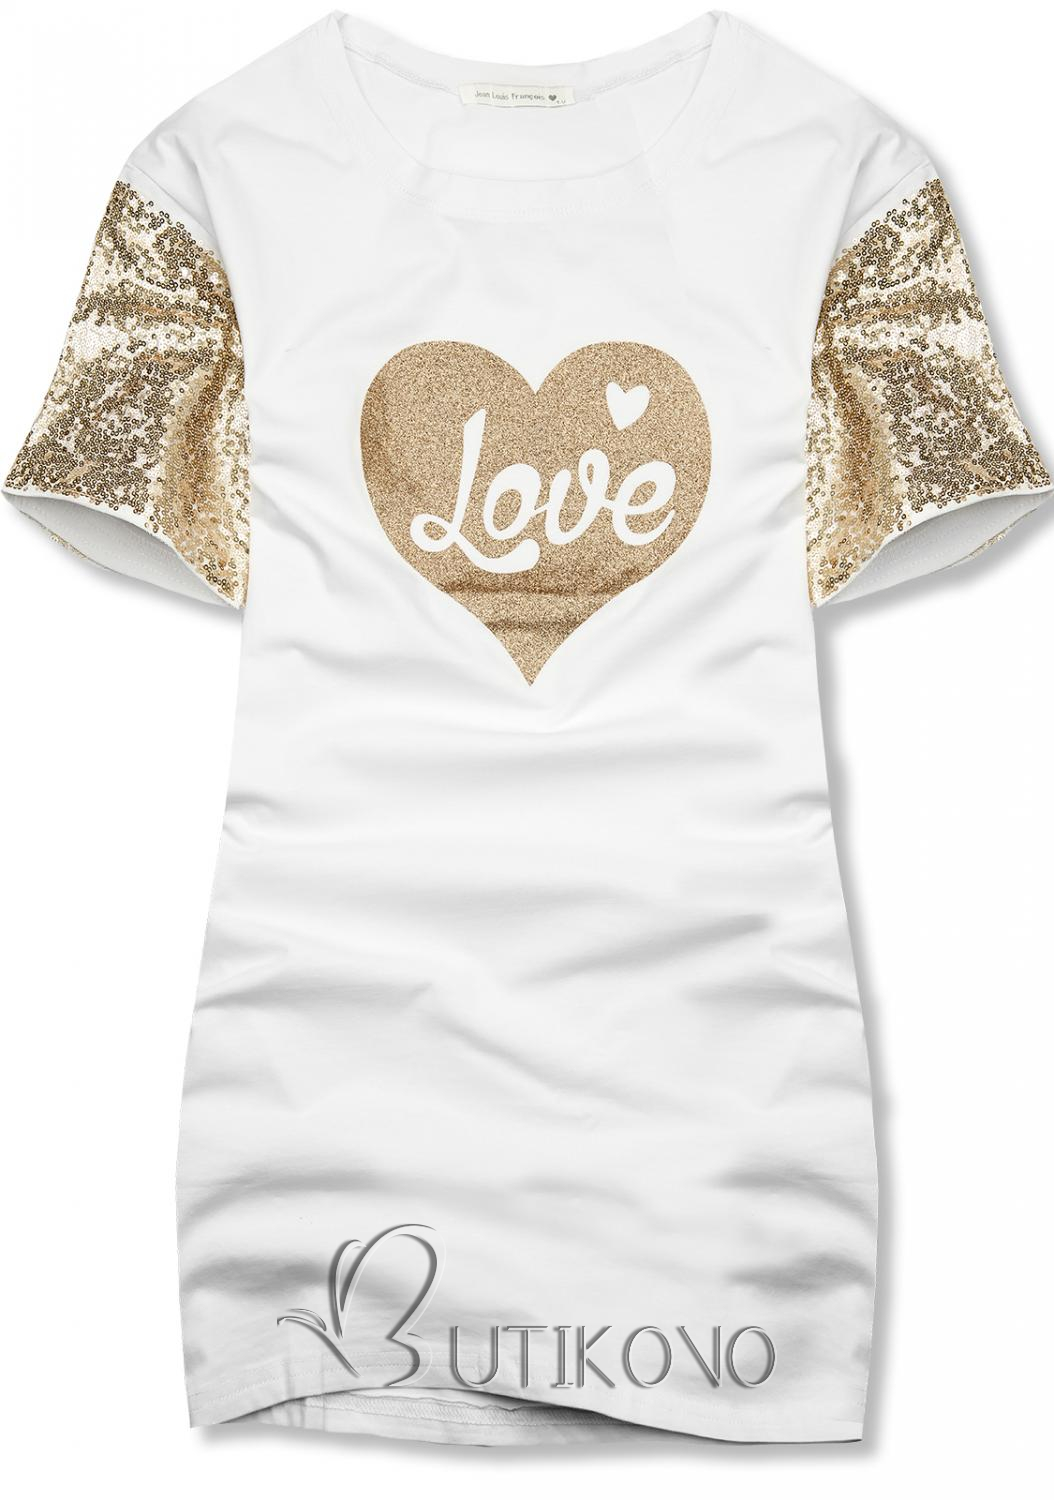 Bílé dámské tričko s motivem Love